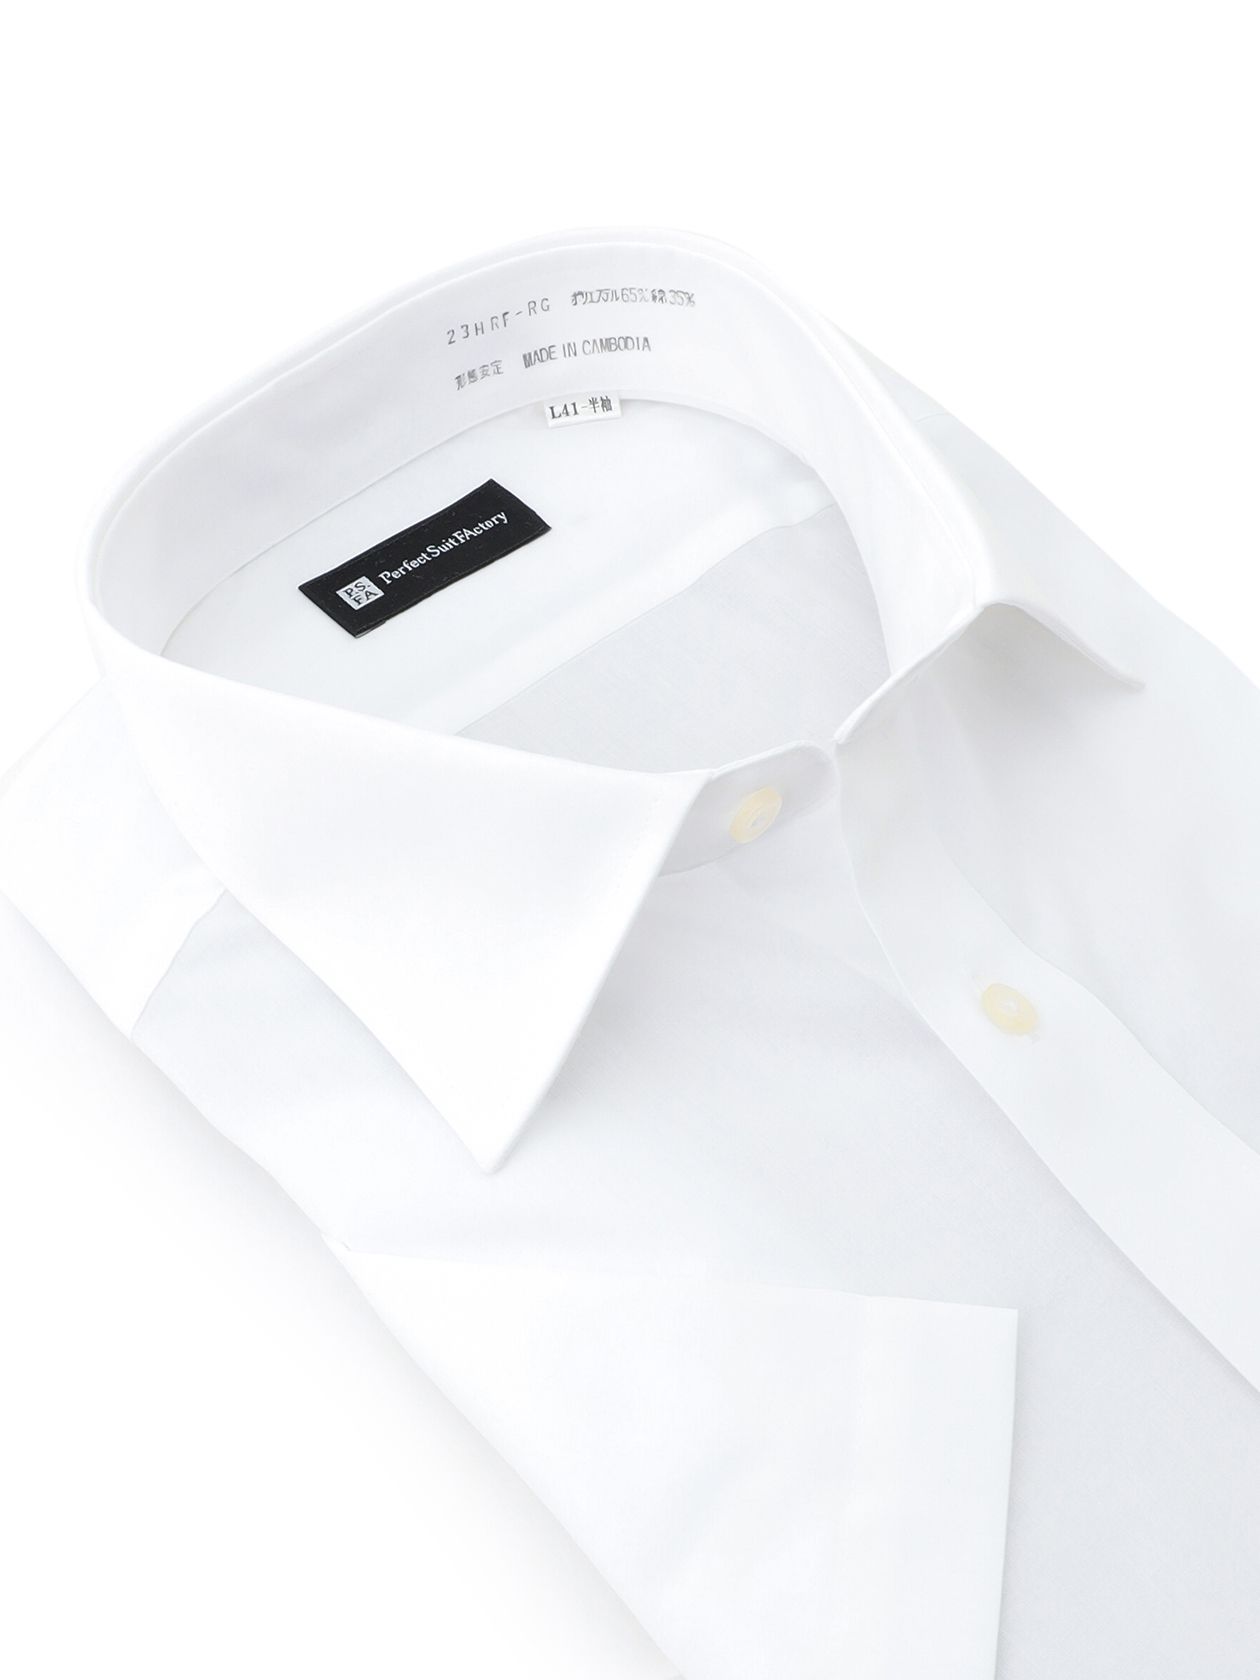  形態安定 シャツ ホワイト シャツ シャツ クラシコモデル(ナチュラルシルエット)